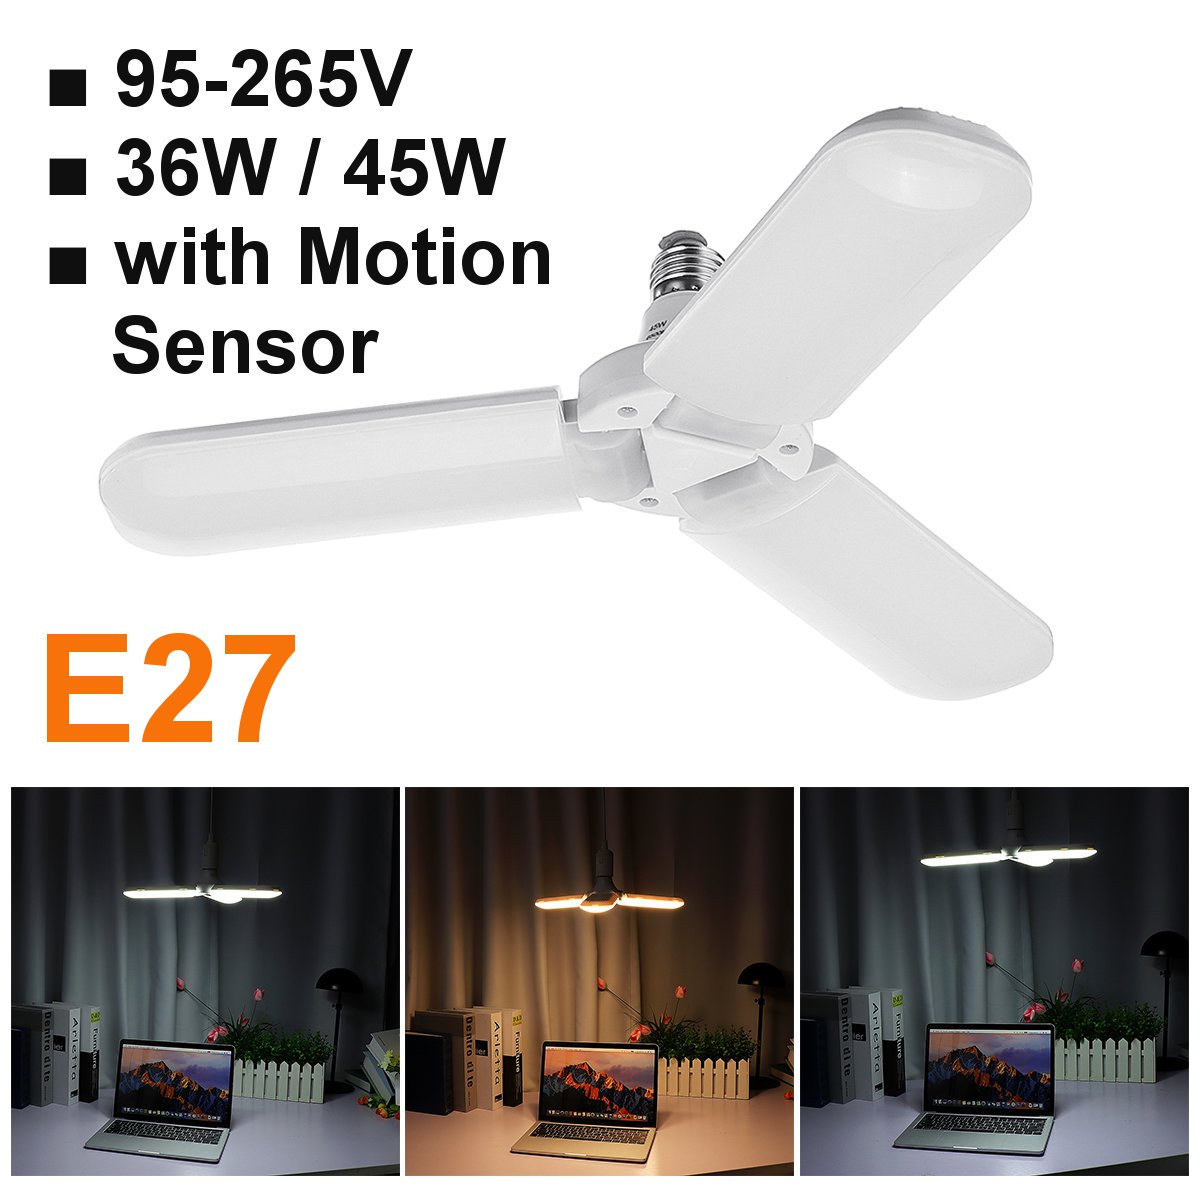 36W-45W-3Blades-Folding-E27-Motion-Sensor-LED-Bulb-Pendant-Lamp-Decor-AC95-265V-1636885-2